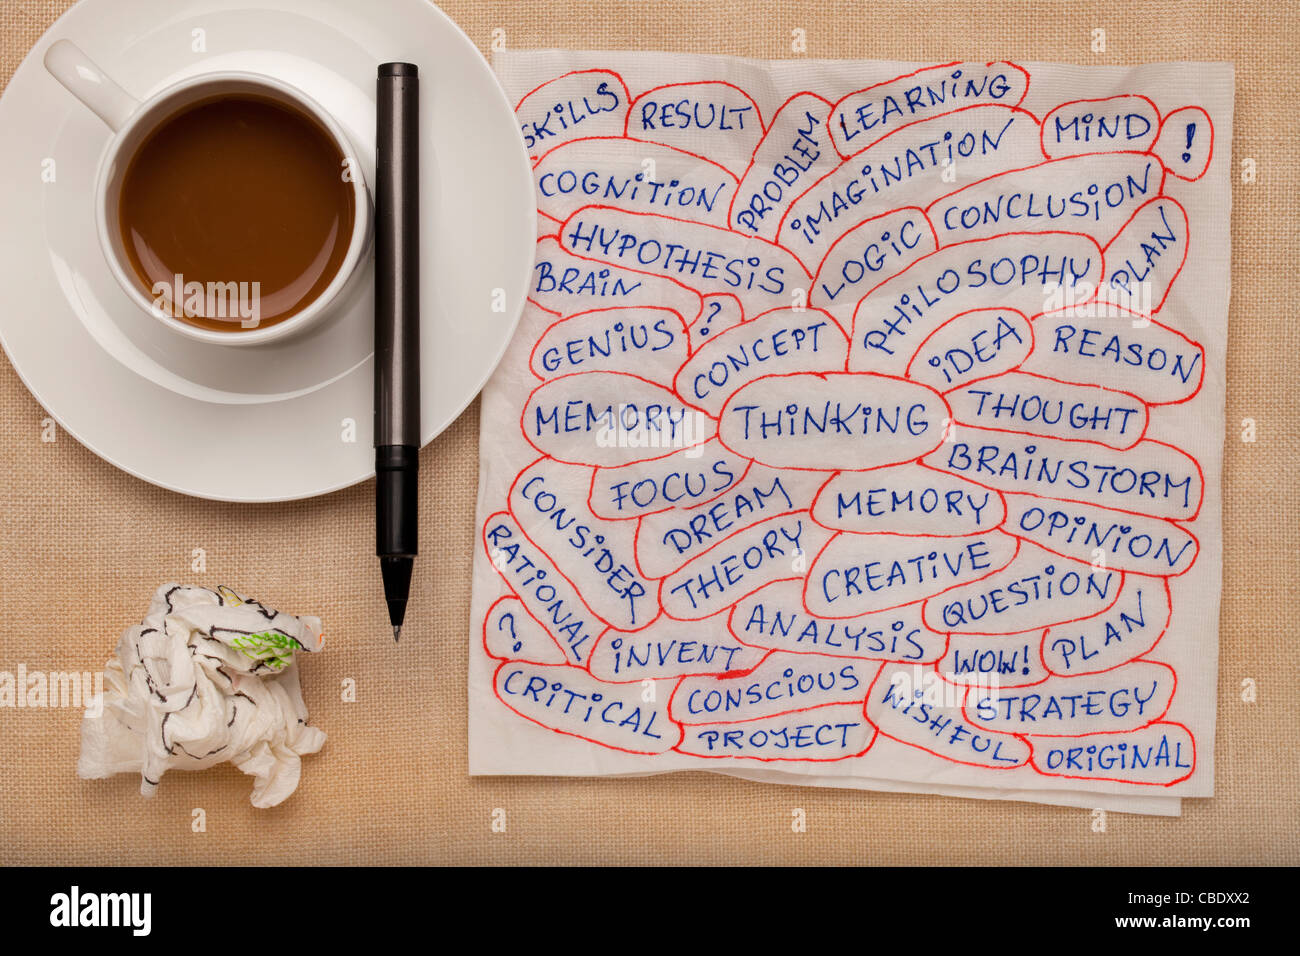 Denken und Verwandte Themen - Wort-Collage auf Serviette mit Kaffeetasse gegen Tischdecke Stockfoto